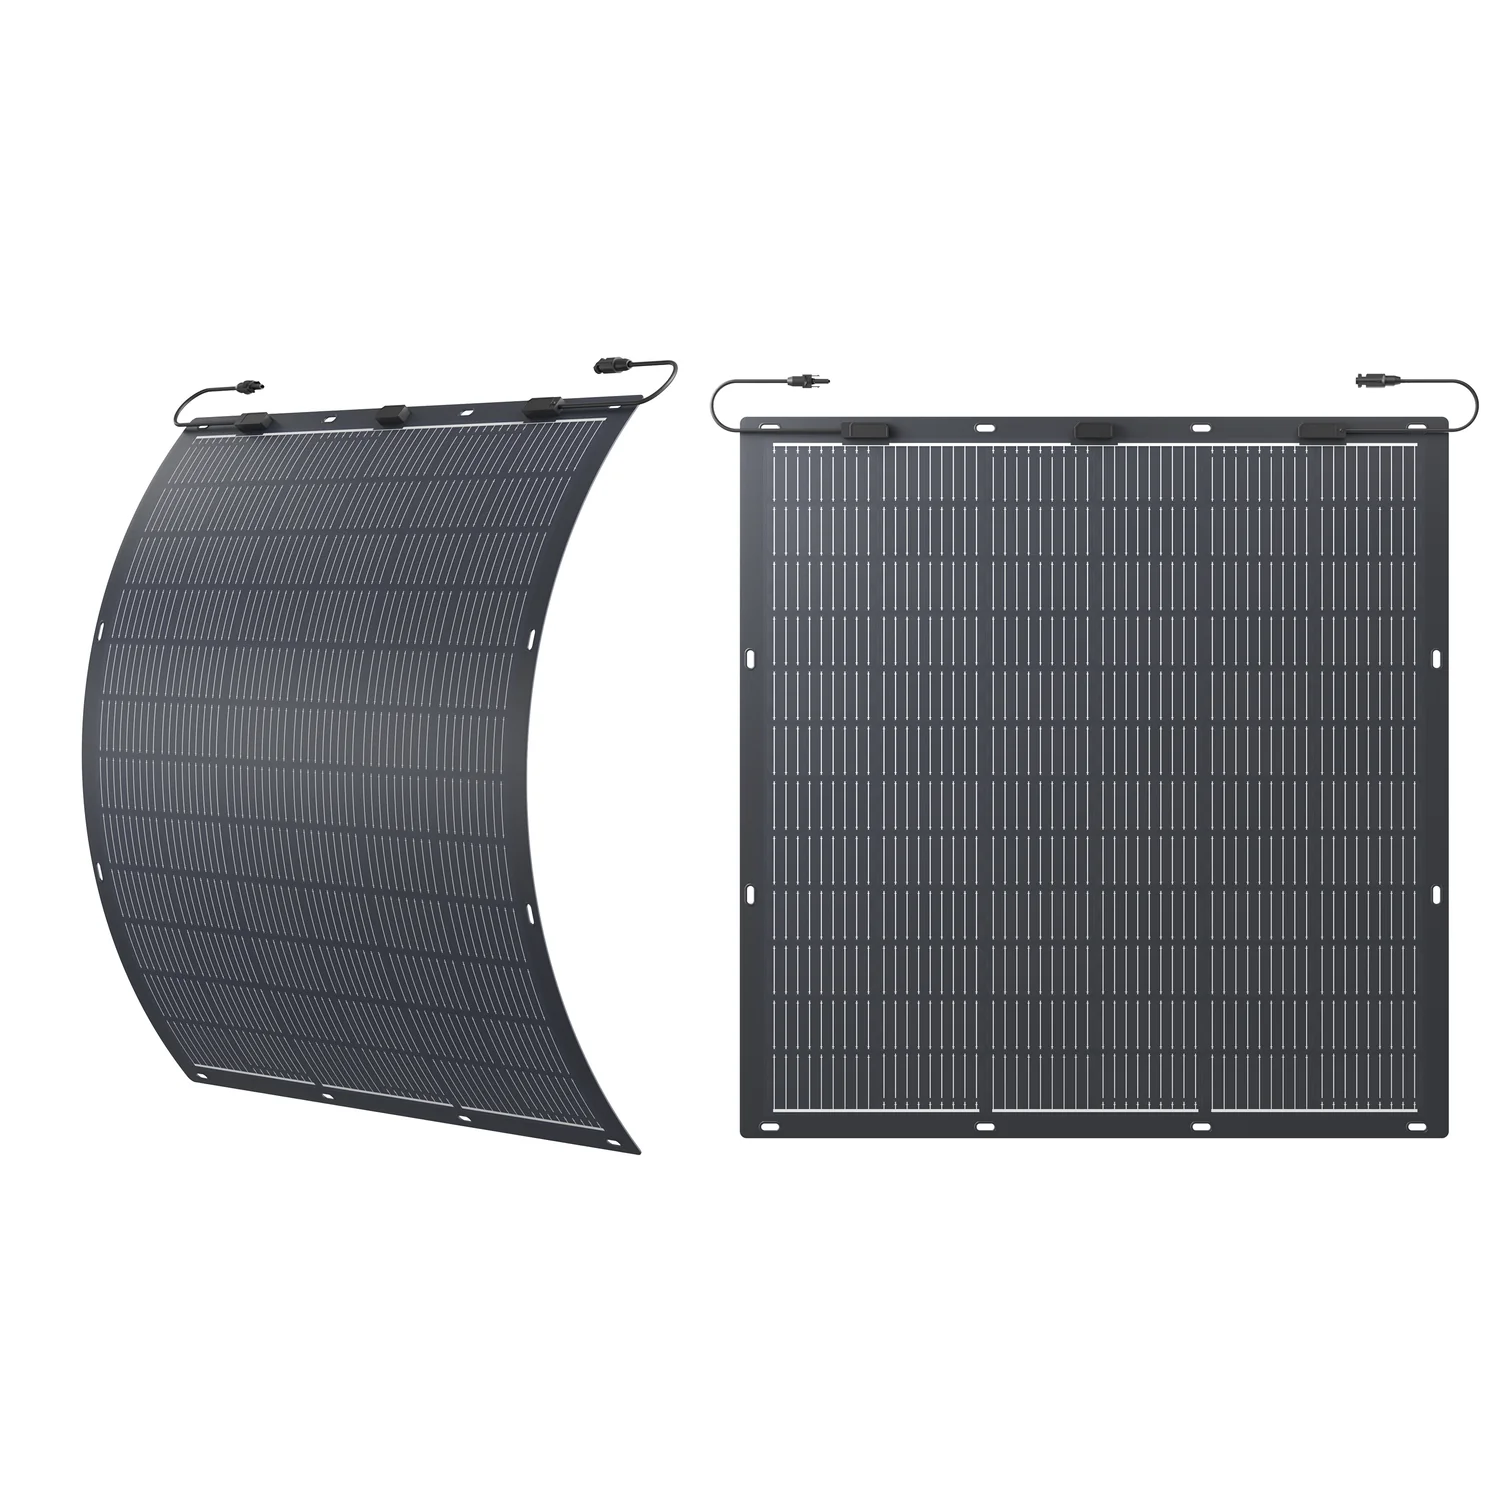 Zendure Balkonkraftwerk, Flexibel Solarpanel 2X 210W(420W), 41V/5A Solareingang, Monocrystalline Silicon Solarmodule, IP67 (für Privatkunden mit 0% MwSt., kein Versand - nur Abholung)